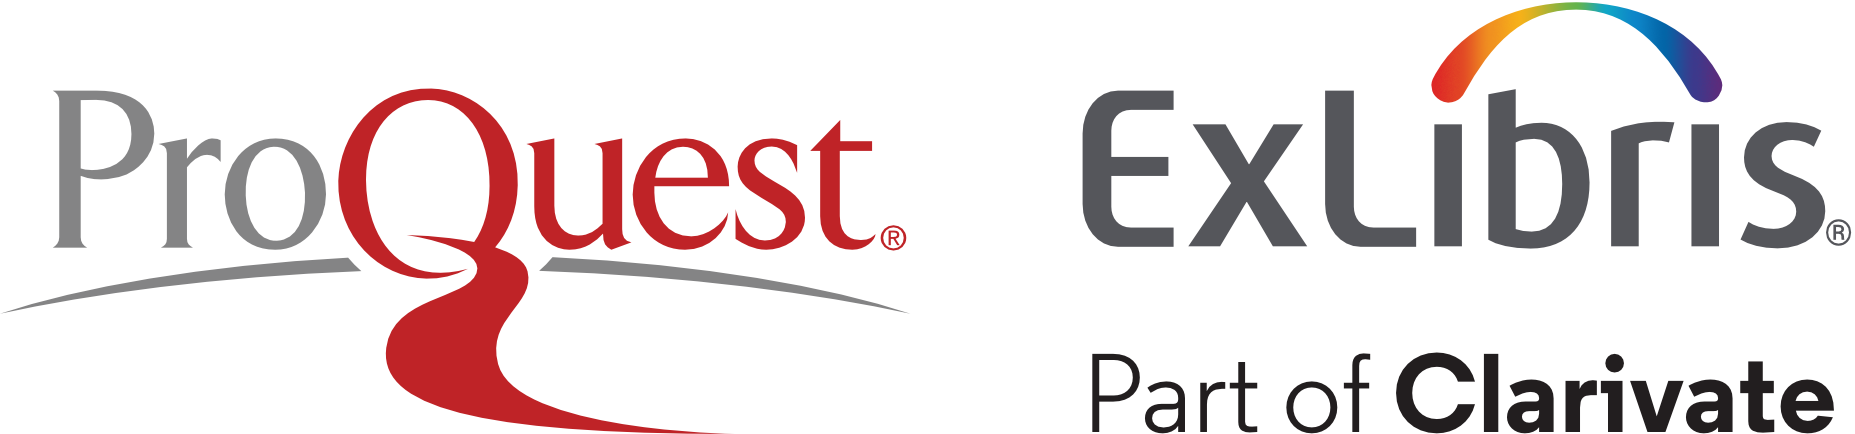 PQ-EL endorsed logo color-1